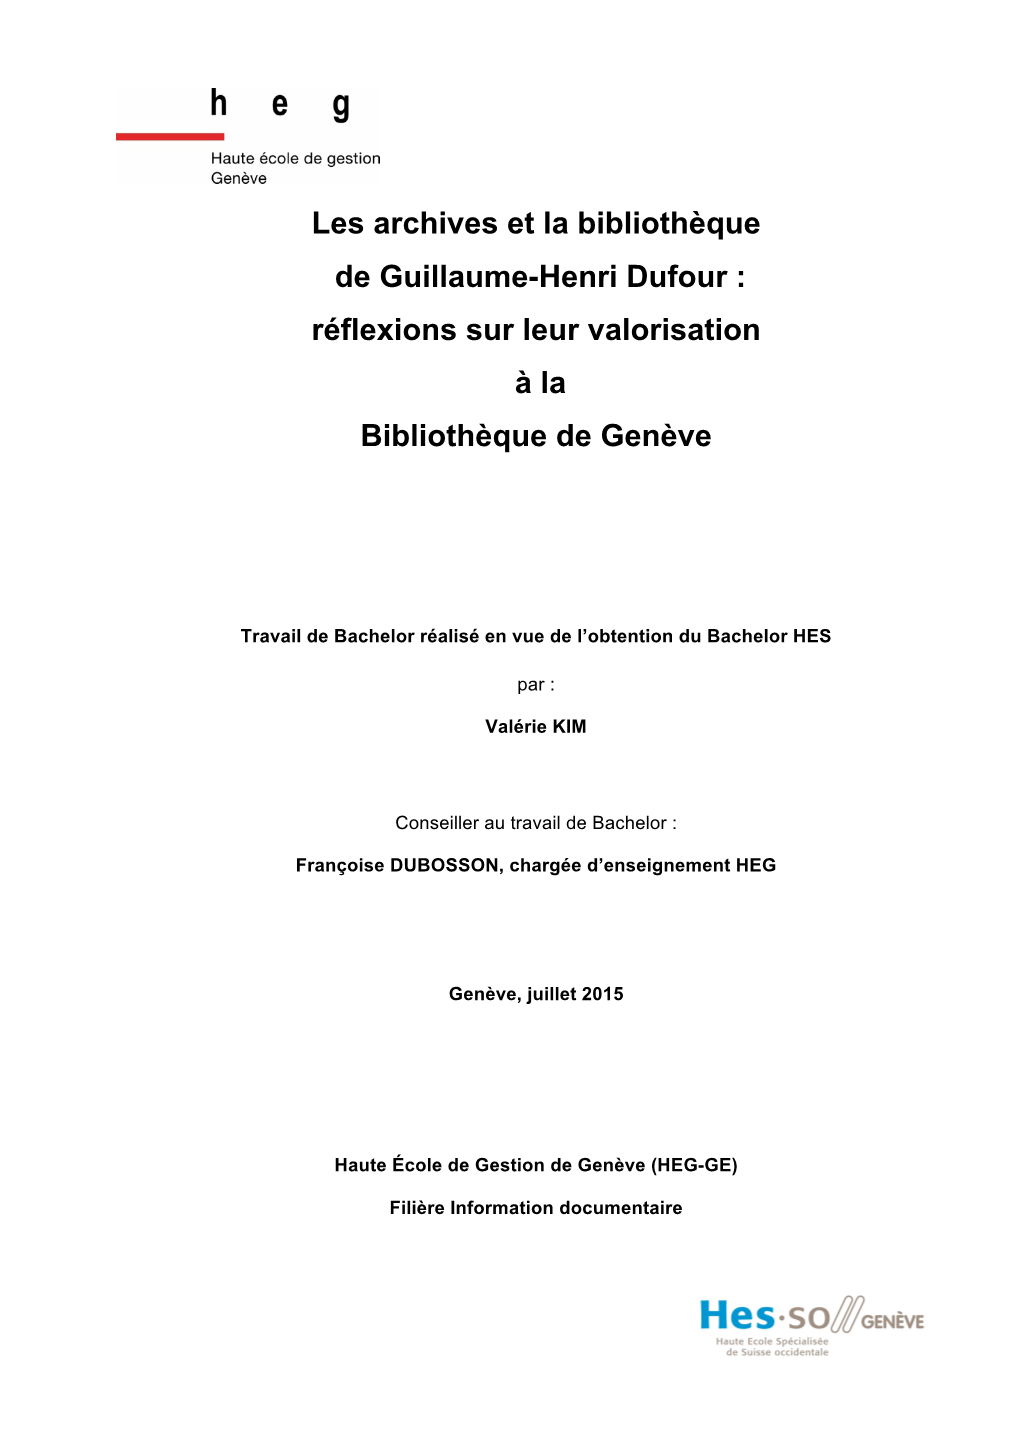 Les Archives Et La Bibliothèque De Guillaume-Henri Dufour : Réflexions Sur Leur Valorisation À La Bibliothèque De Genève